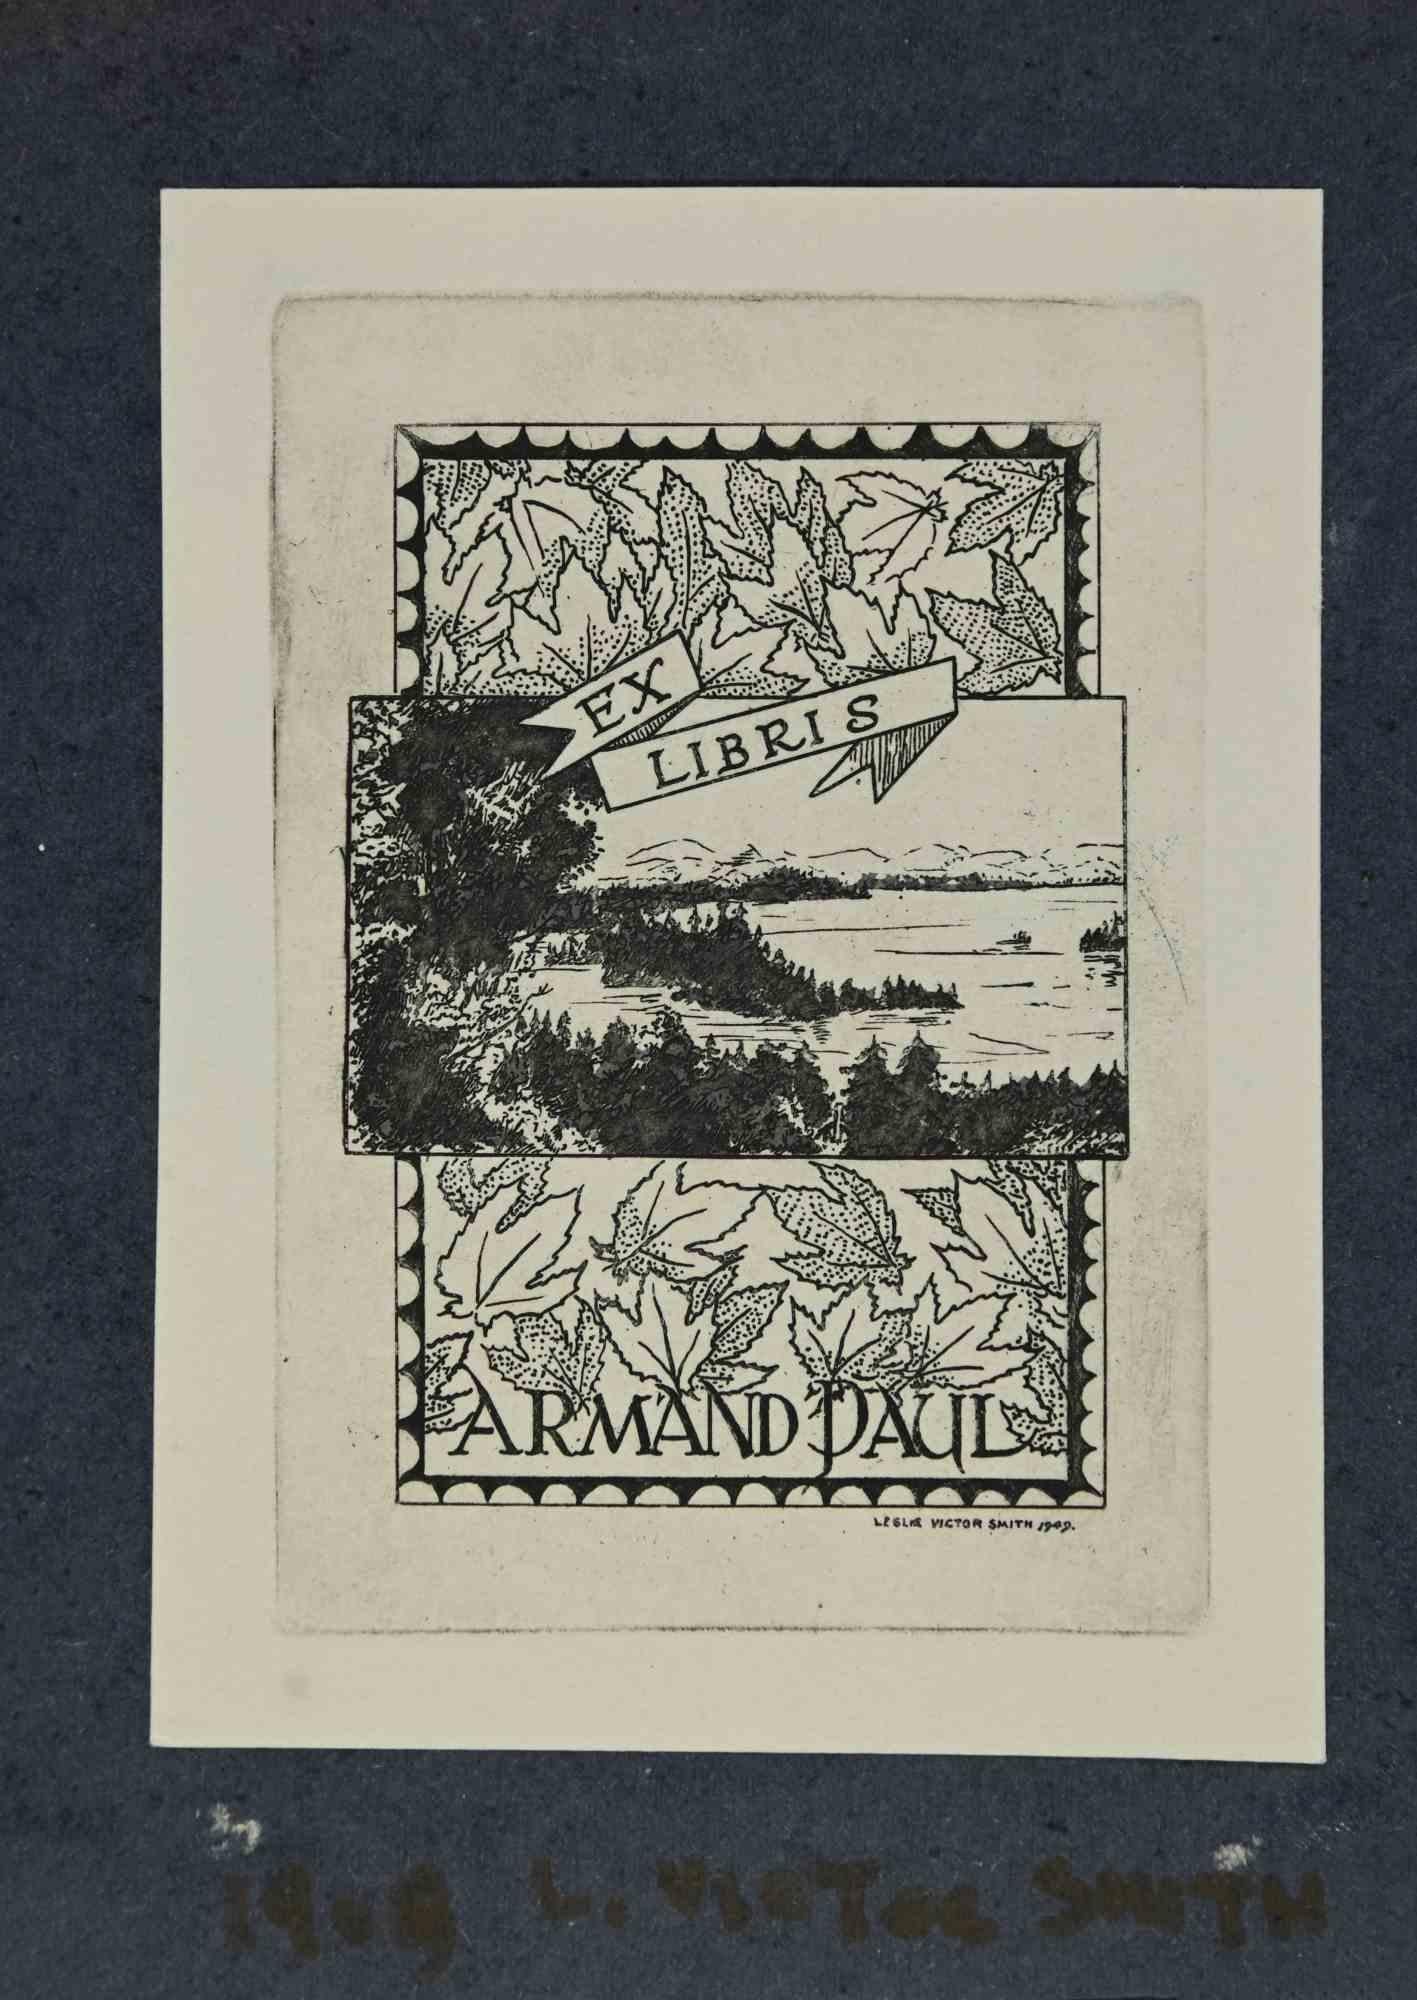 Ex-Libris - Armand Paul ist ein Kunstwerk des Künstlers Leslie Victor Smith aus dem Jahr 1909. 

Holzschnitt auf Elfenbeinpapier.  In der Platte signiert und am unteren Rand datiert. 

Das Werk ist auf Karton geklebt. Gesamtabmessungen: 16x 11,5